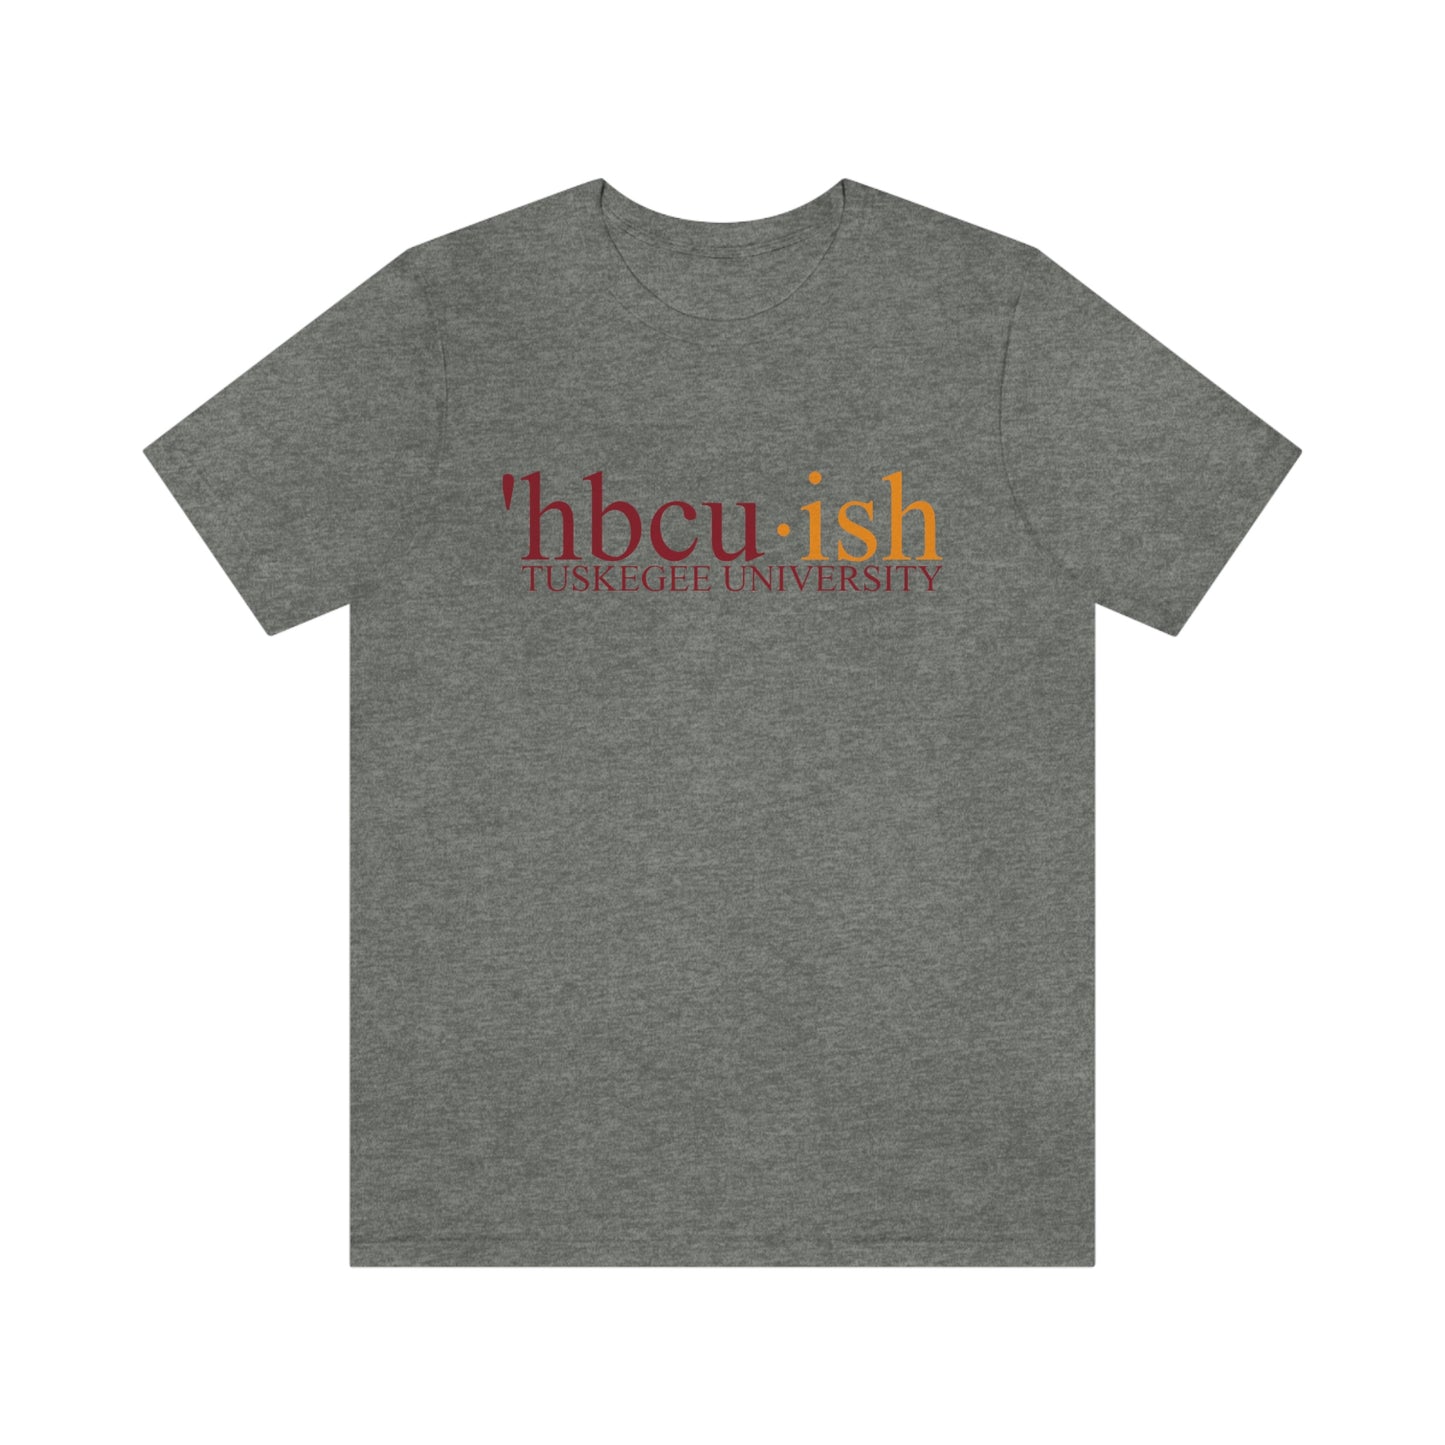 HBCU Love (Tuskegee University/ hbcuish Unisex Jersey Short Sleeve Tee